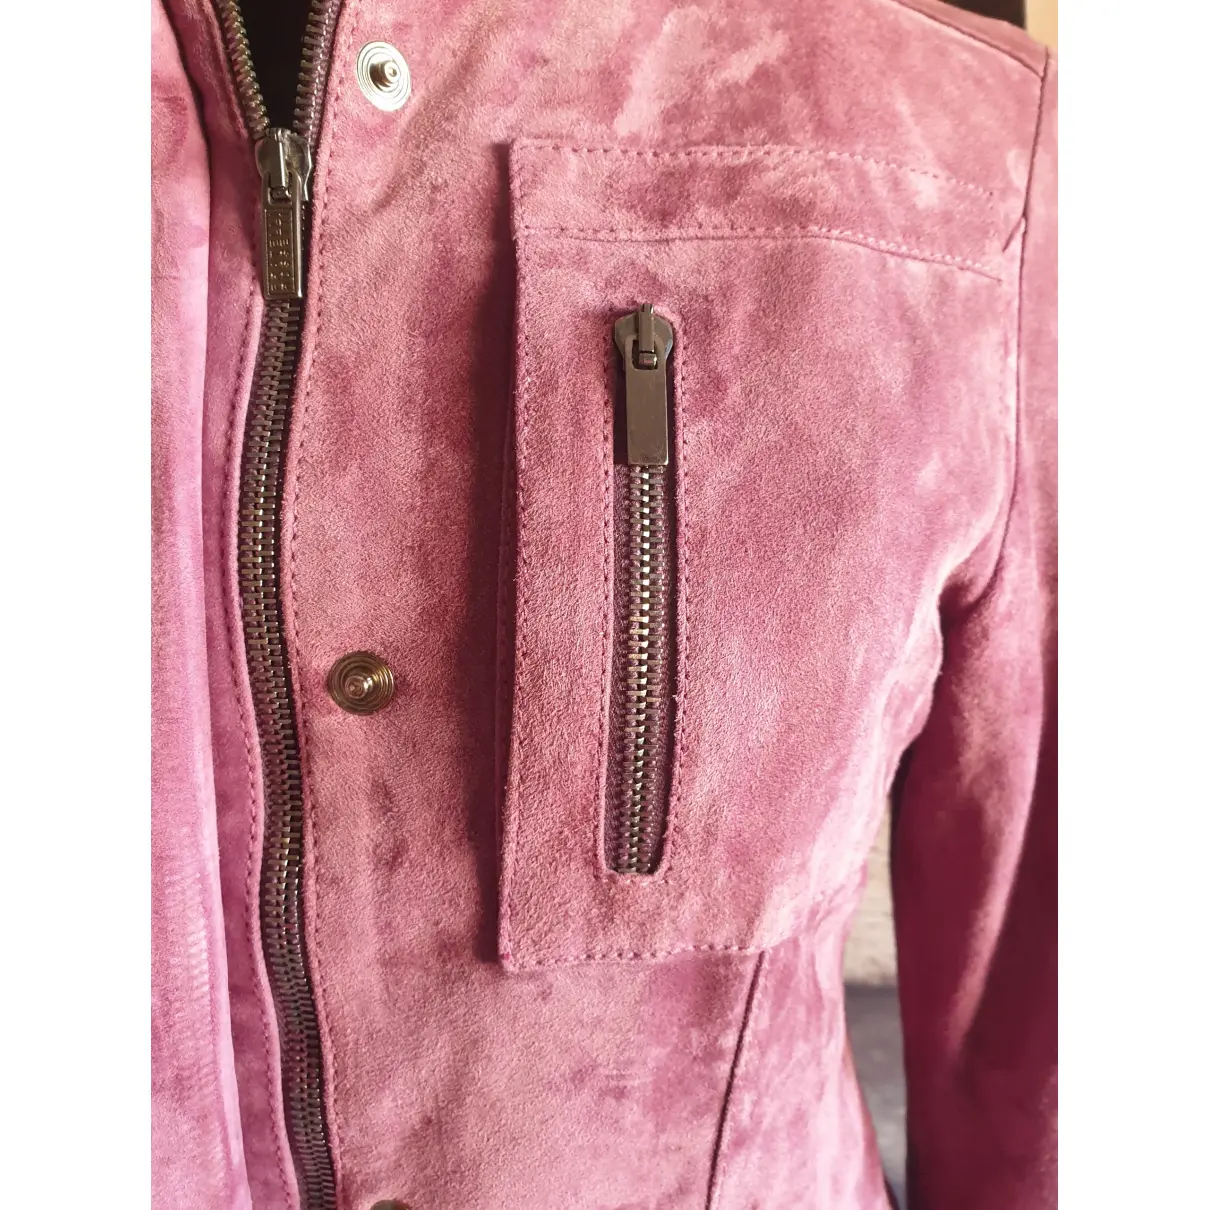 Buy Fratelli Rossetti Leather short vest online